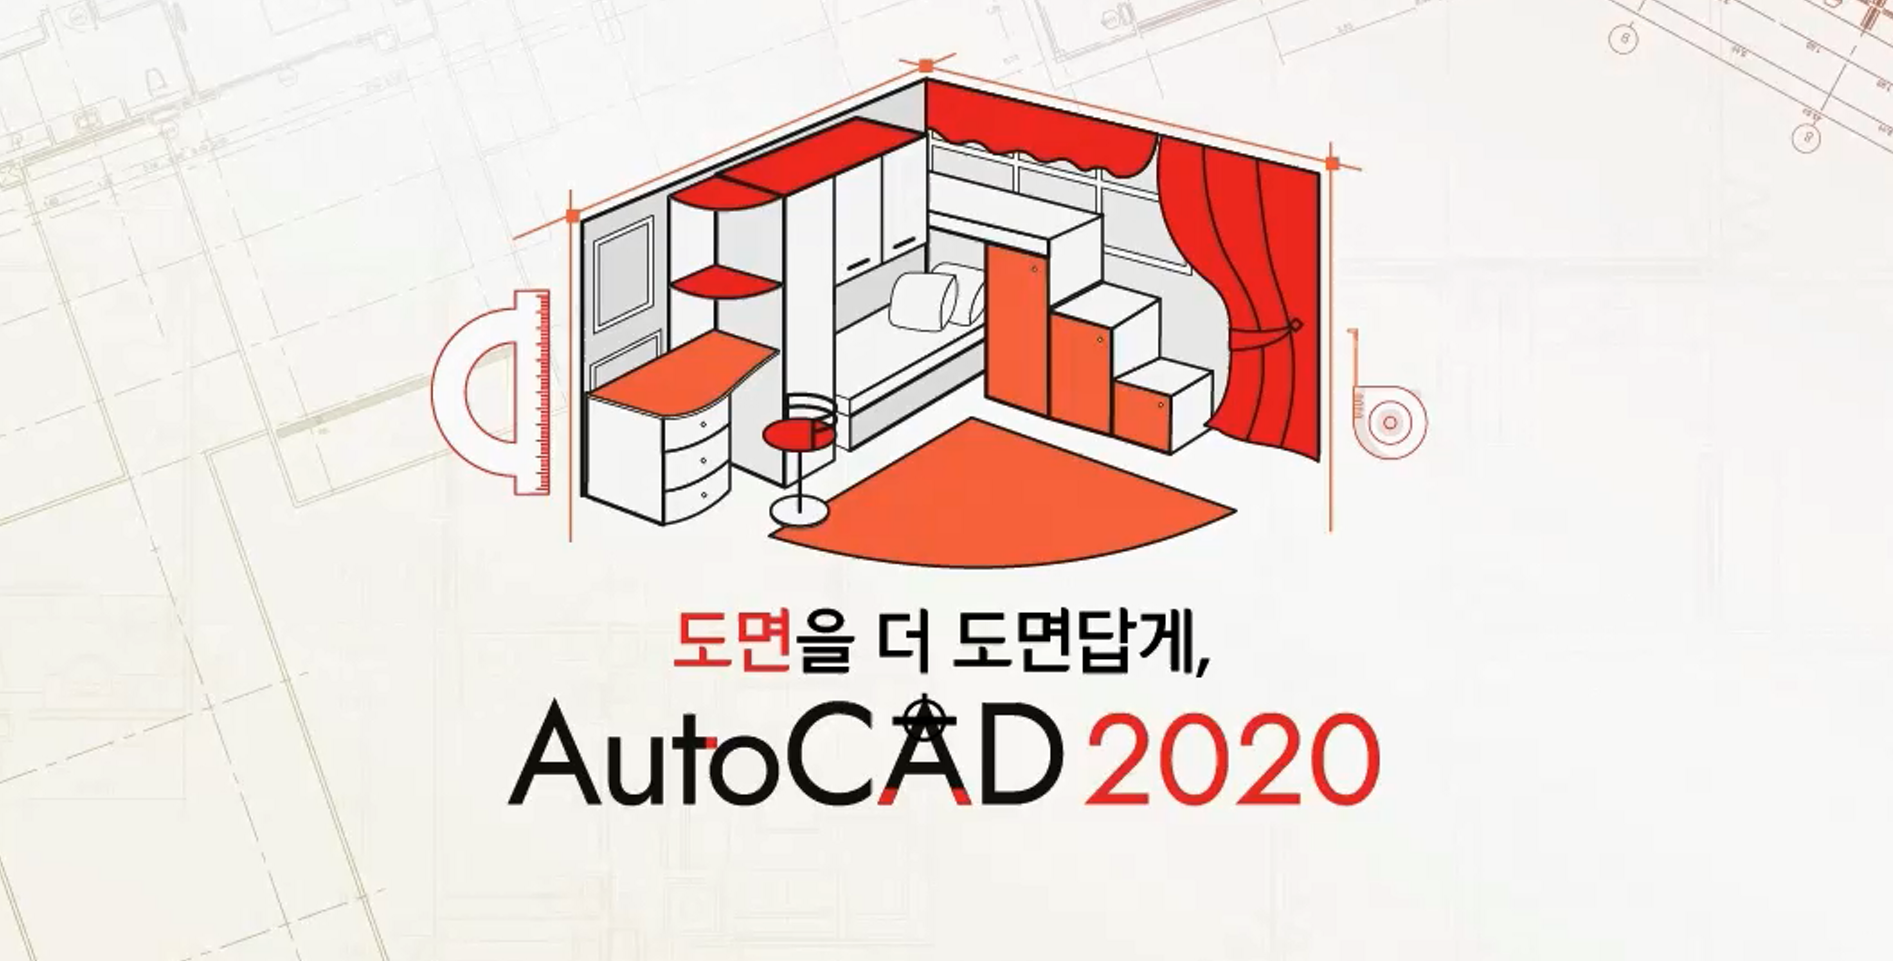 도면을 더 도면답게, AutoCAD 2020